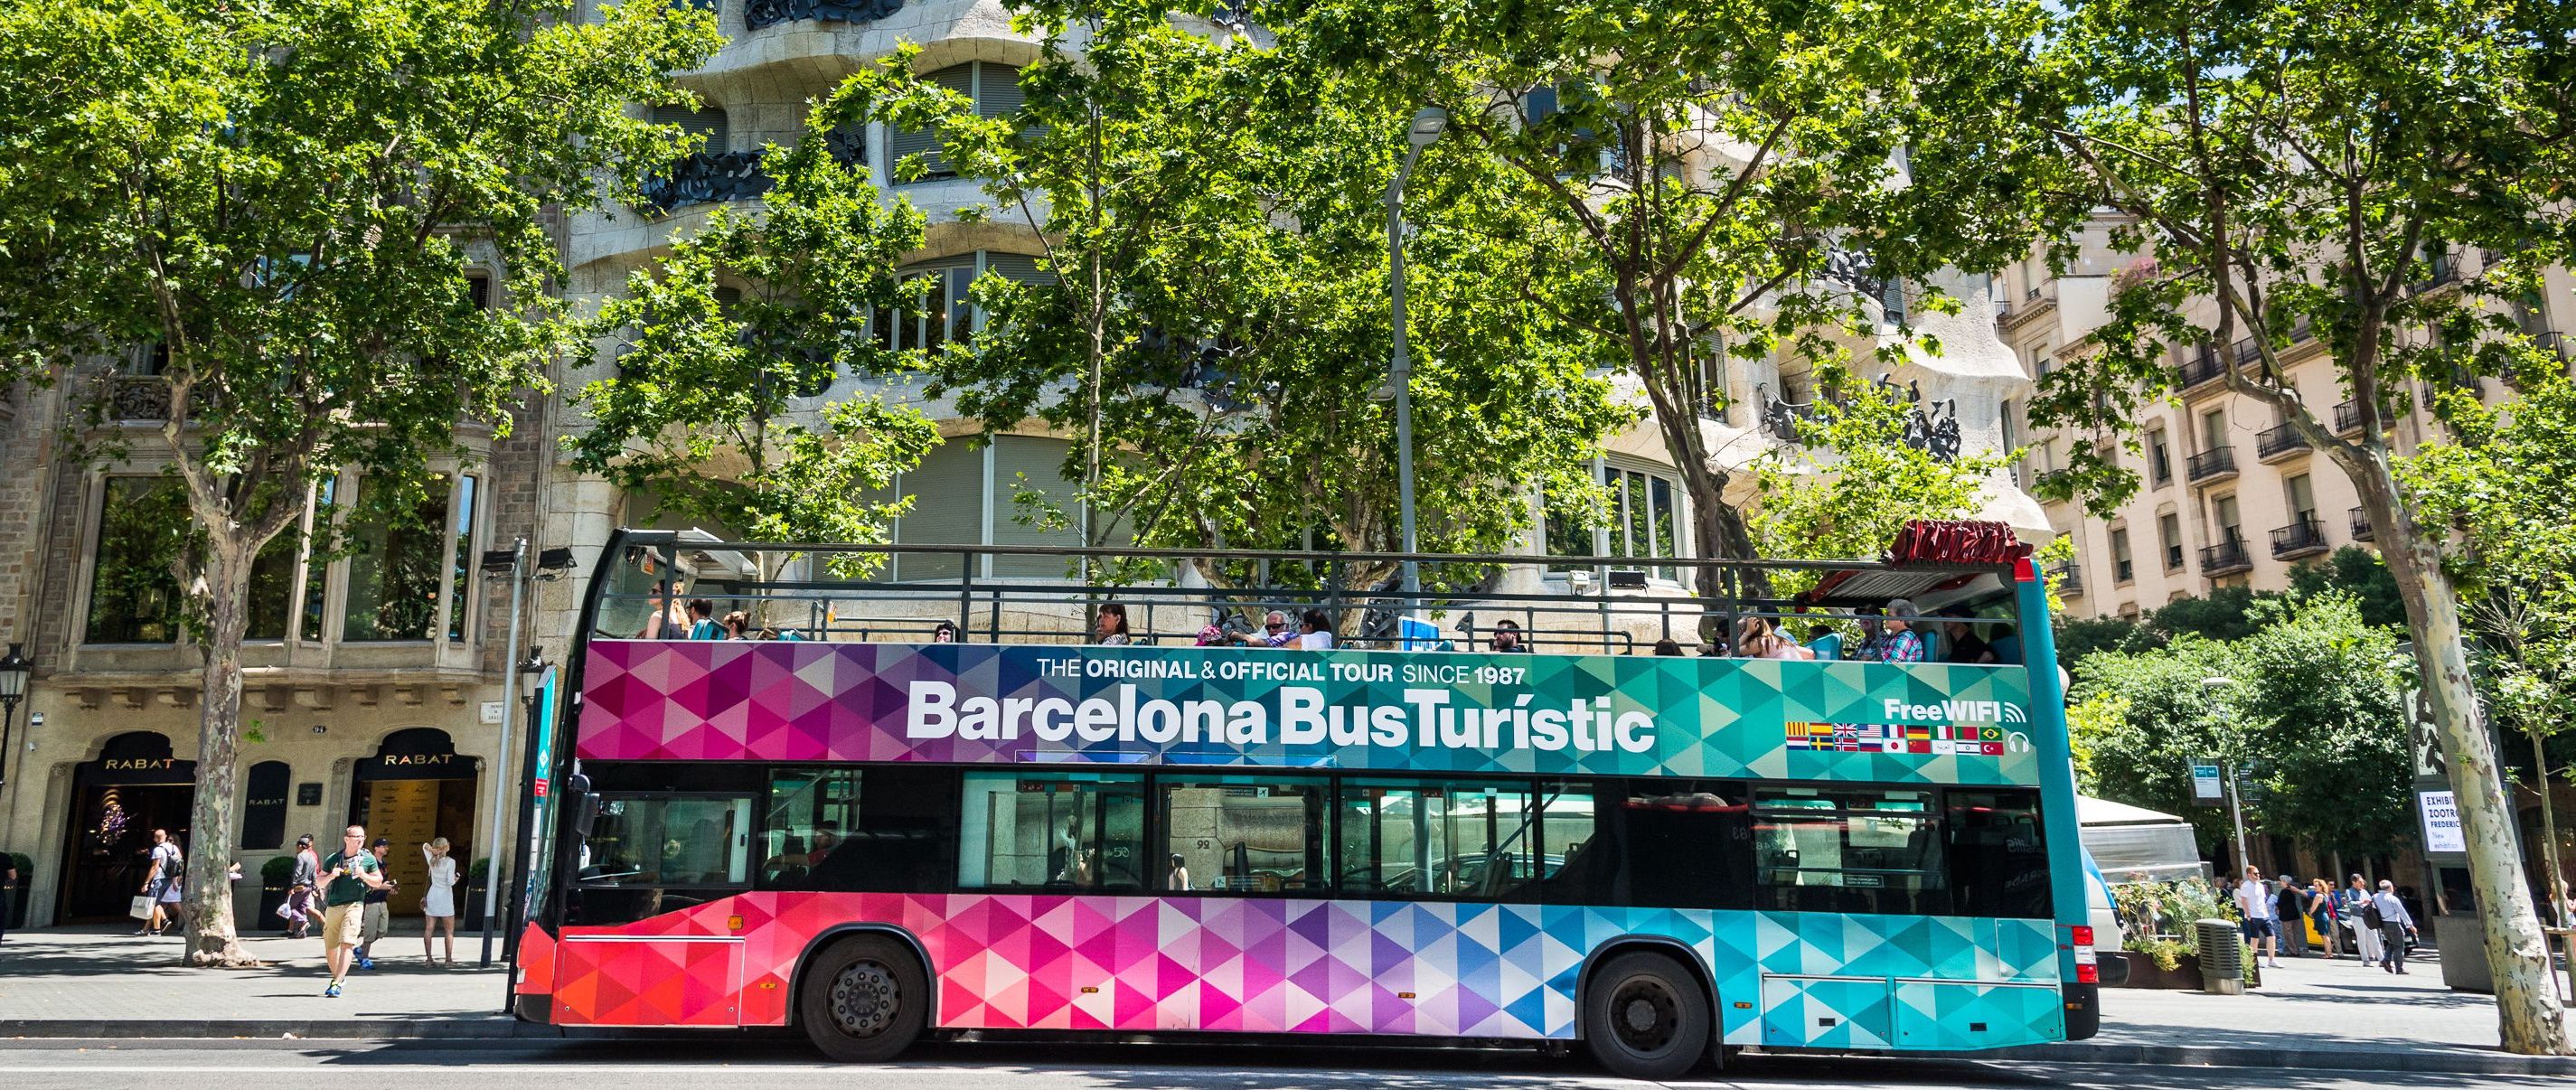 Hotel + Entradas bus turístico Barcelona 2 días - Alojamientos en Barcelona